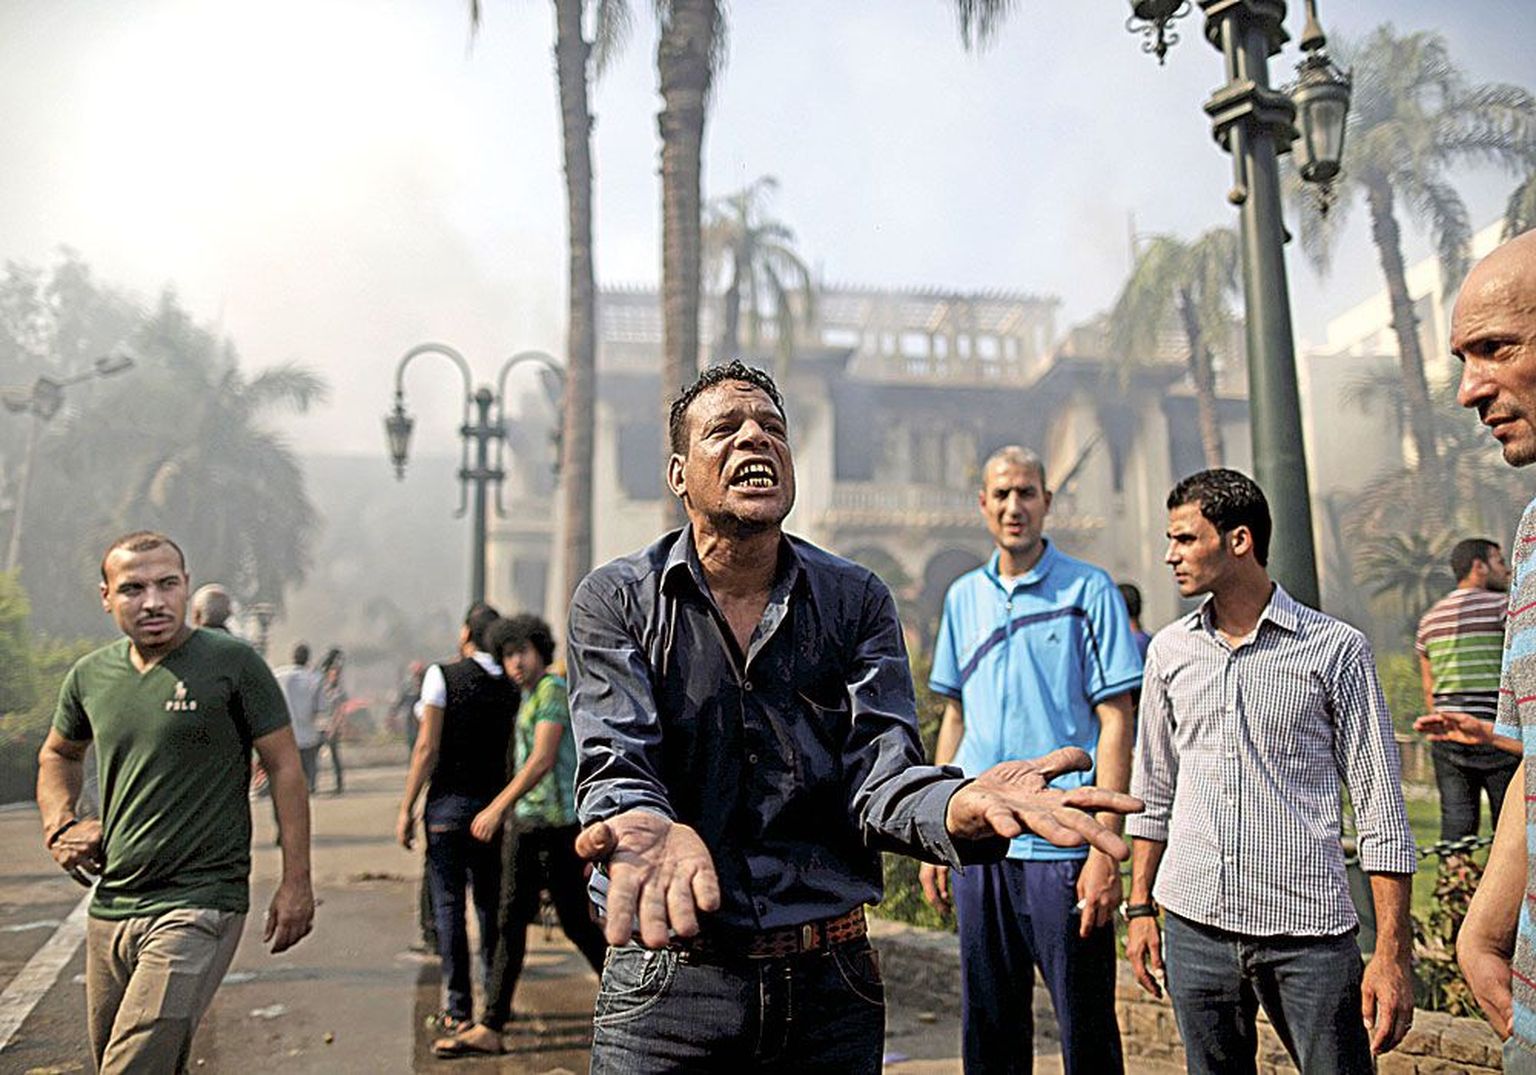 Kairo elanikud ahastavad protestilaagrite laialiajamise veriste tagajärgede üle.